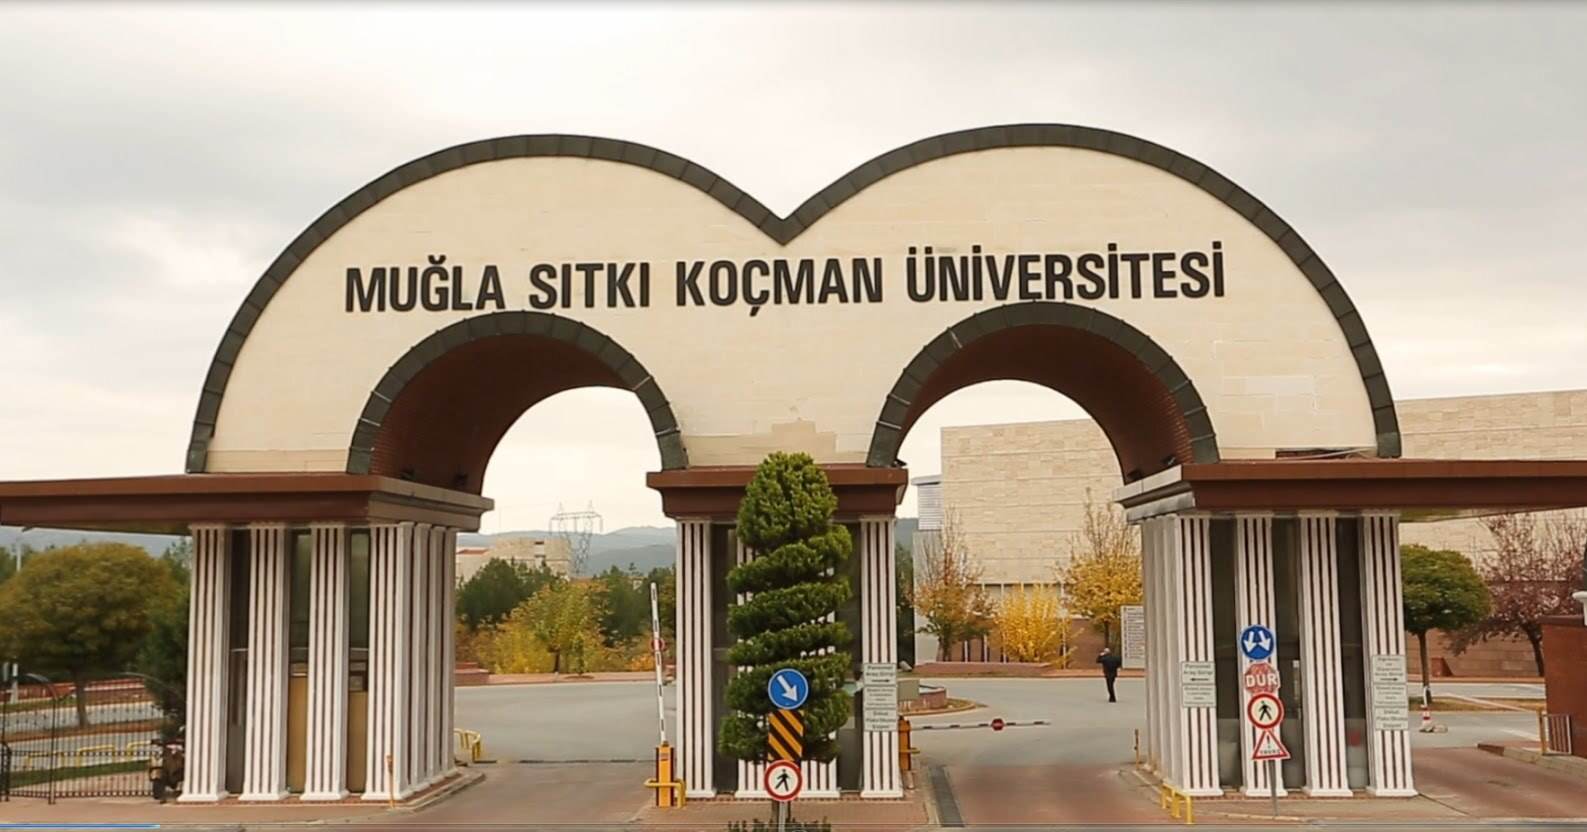 Muğla Sıtkı Koçman Üniversitesi Mühendislik Fakültesi